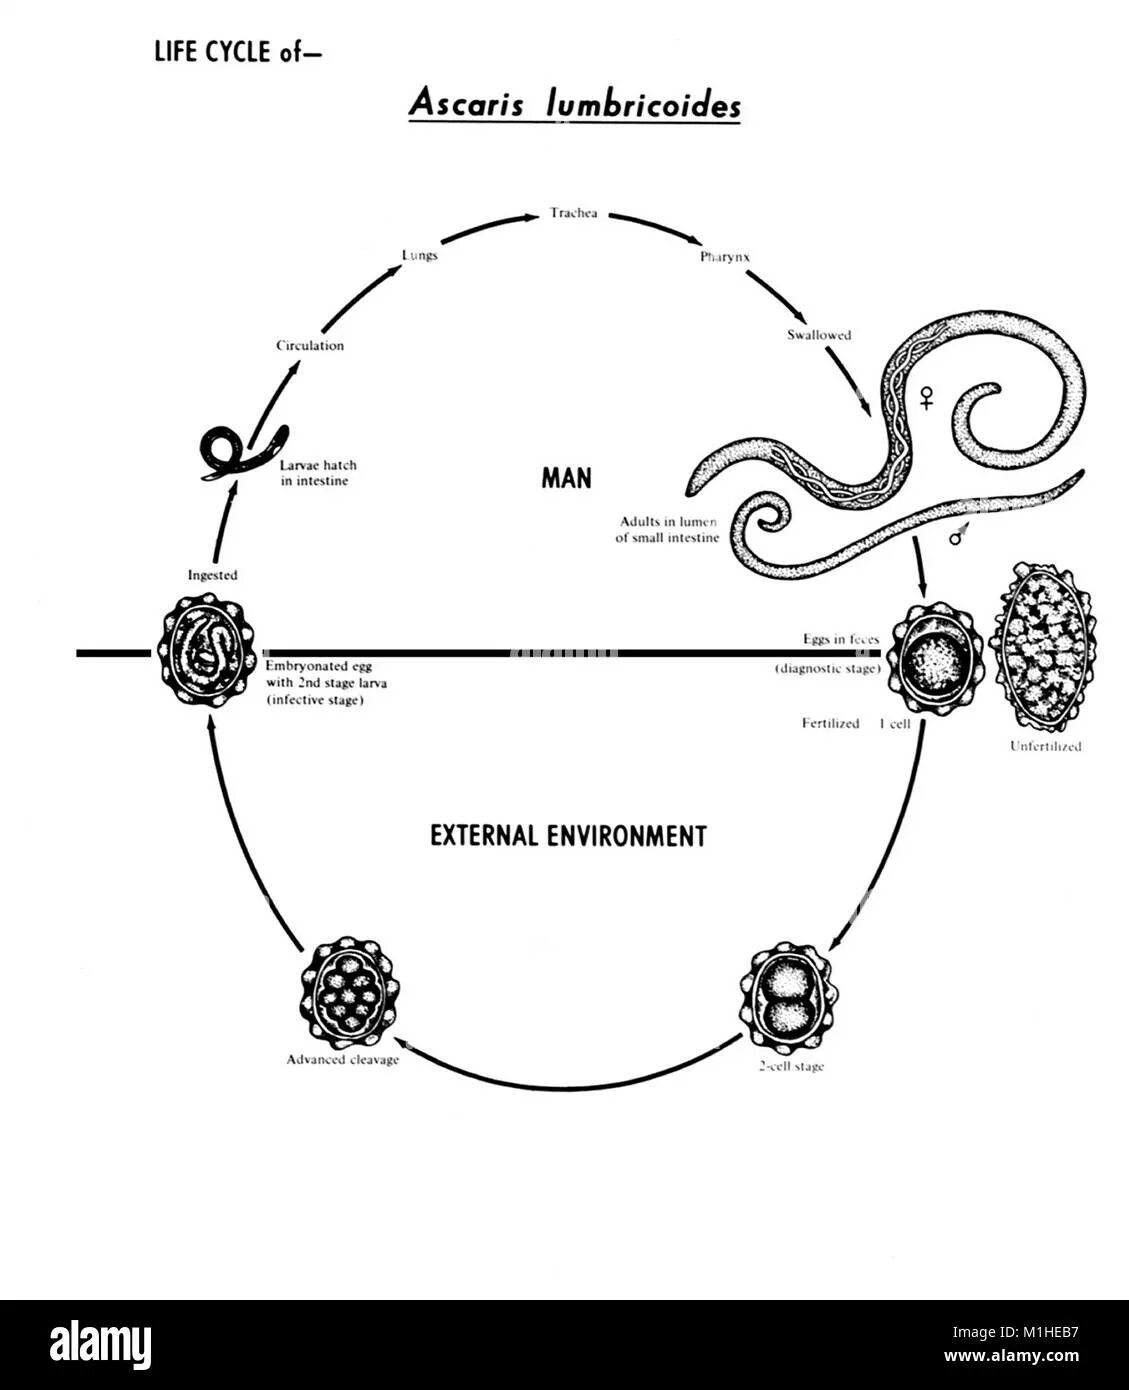 Жизненный цикл Ascaris lumbricoides схема. Жизненный цикл аскариды человеческой схема. Схема жизненного цикла аскариды (Ascaris lumbricoides). Цикл развития аскариды человеческой.